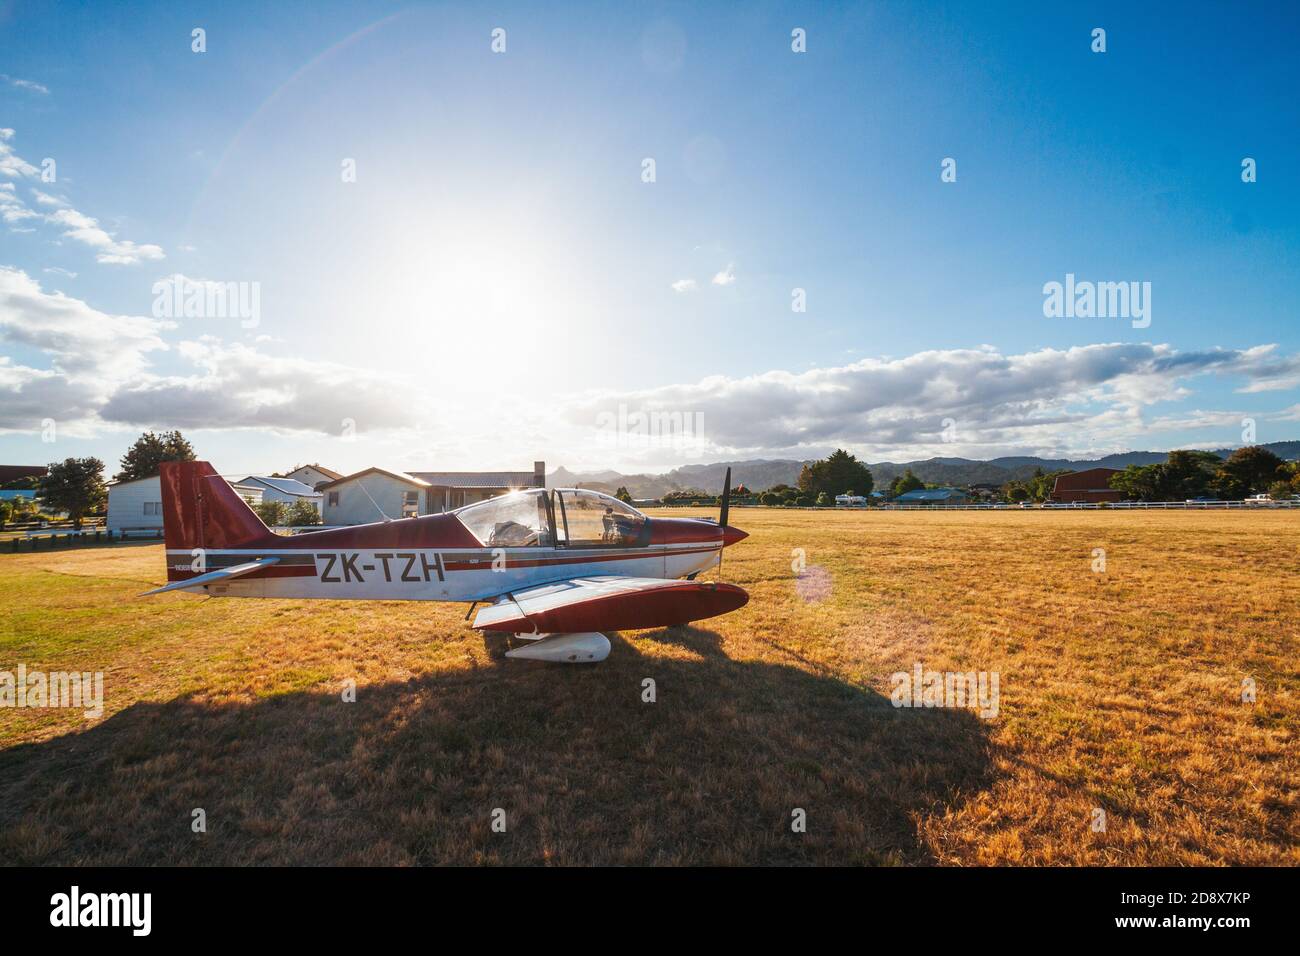 Un avion léger Robin 2120 à deux places est stationné sur l'herbe à l'aérodrome de Pauanui, à Coromandel, en Nouvelle-Zélande, alors que le soleil se couche en été Banque D'Images